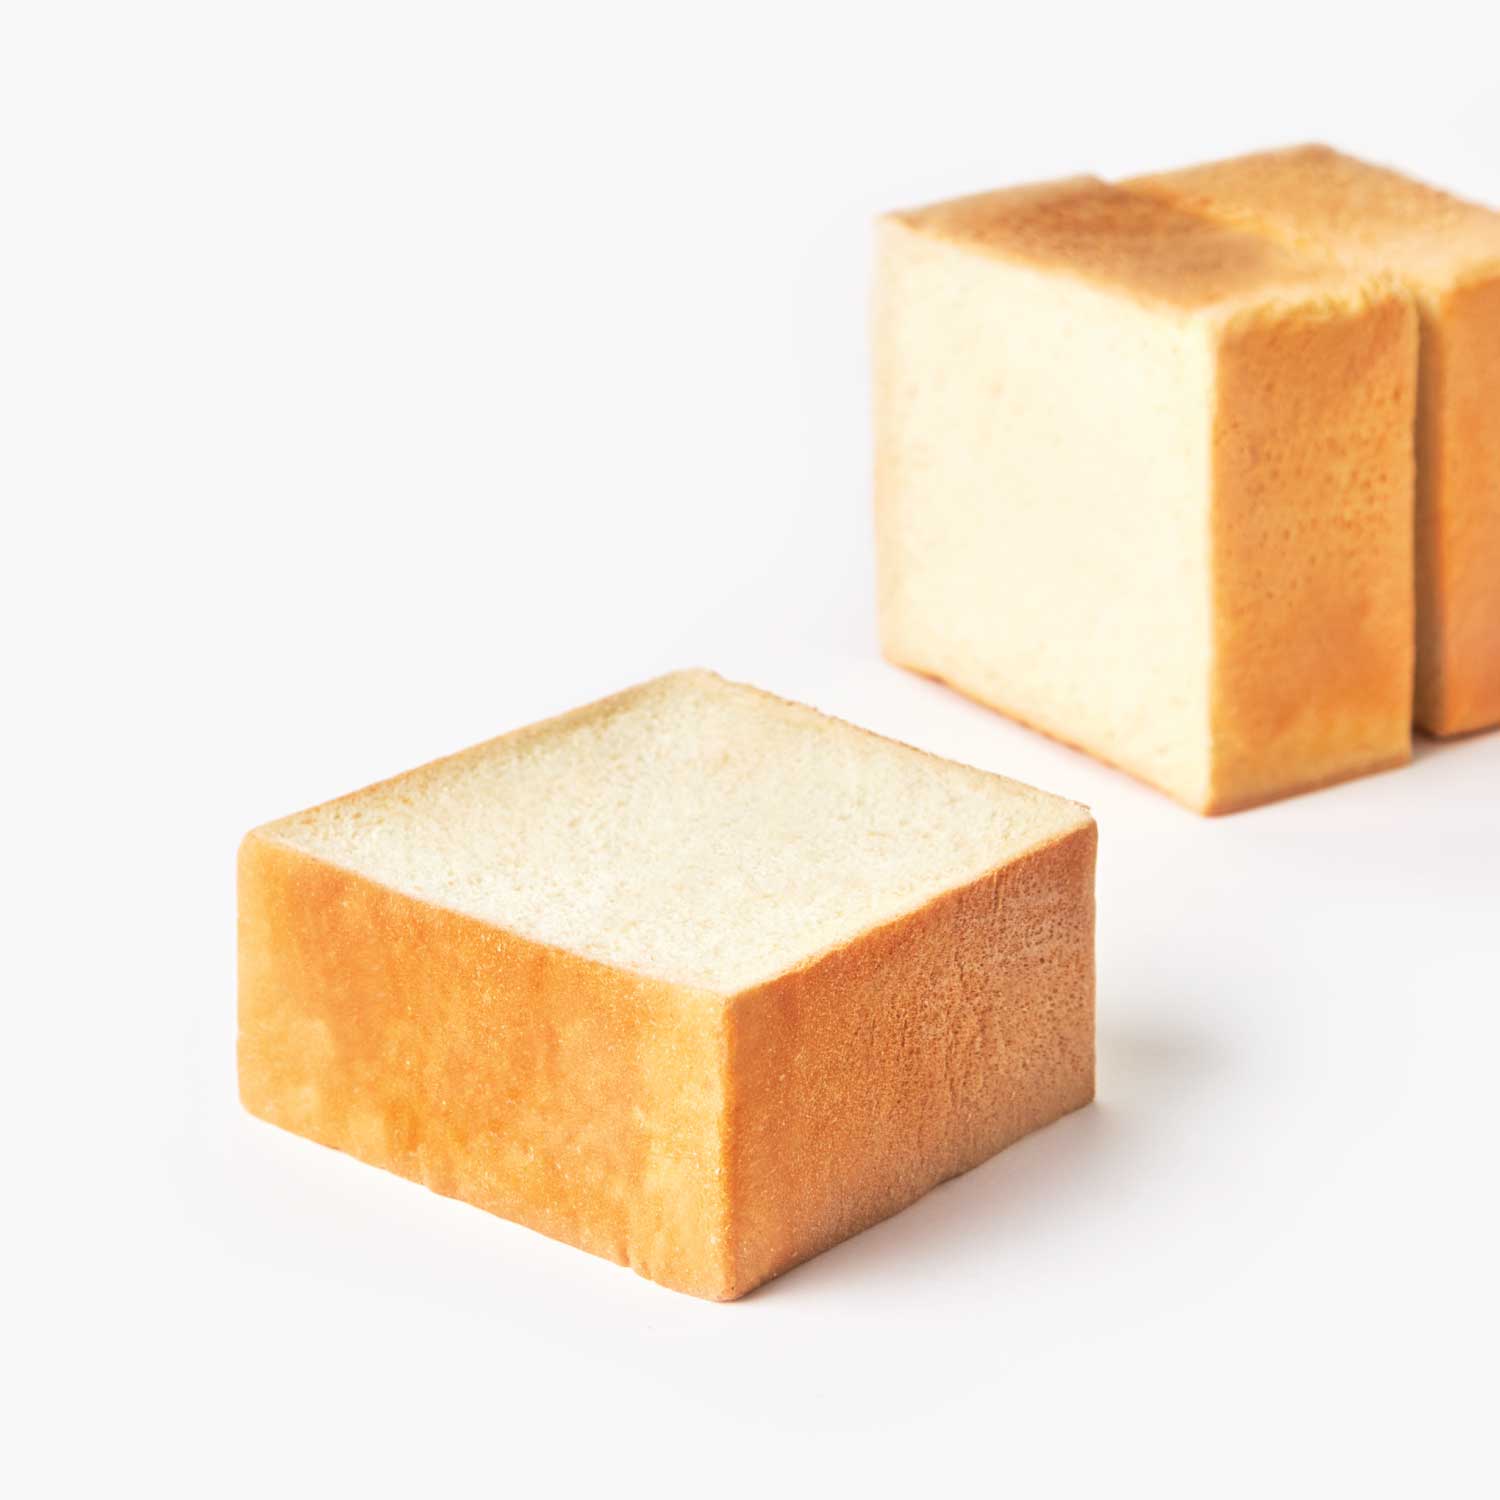 ขนมปังแช่แข็ง : SYNOVA ชิบูย่าโทสต์ไม่ทาเนย (ยกกล่อง)